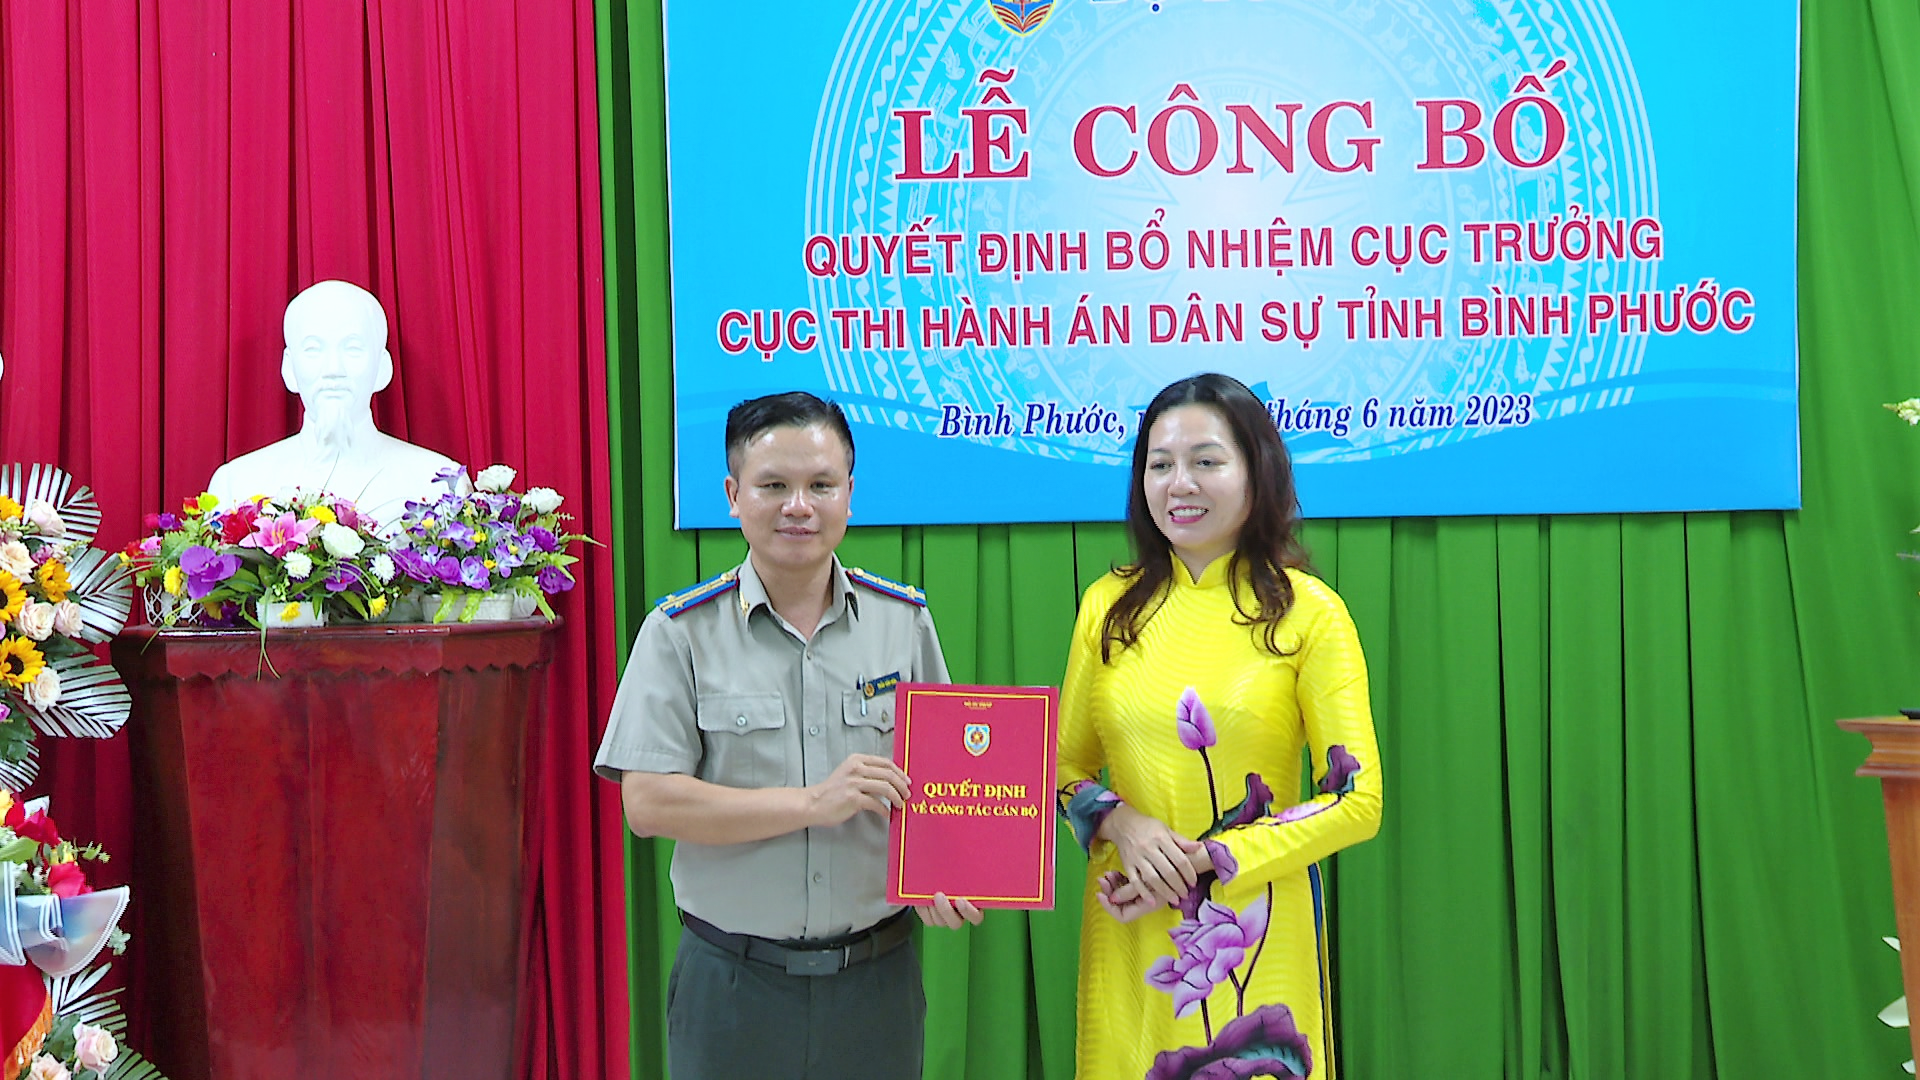 Công bố quyết định bổ nhiệm Cục trưởng Cục Thi hành án Dân sự tỉnh Bình Phước